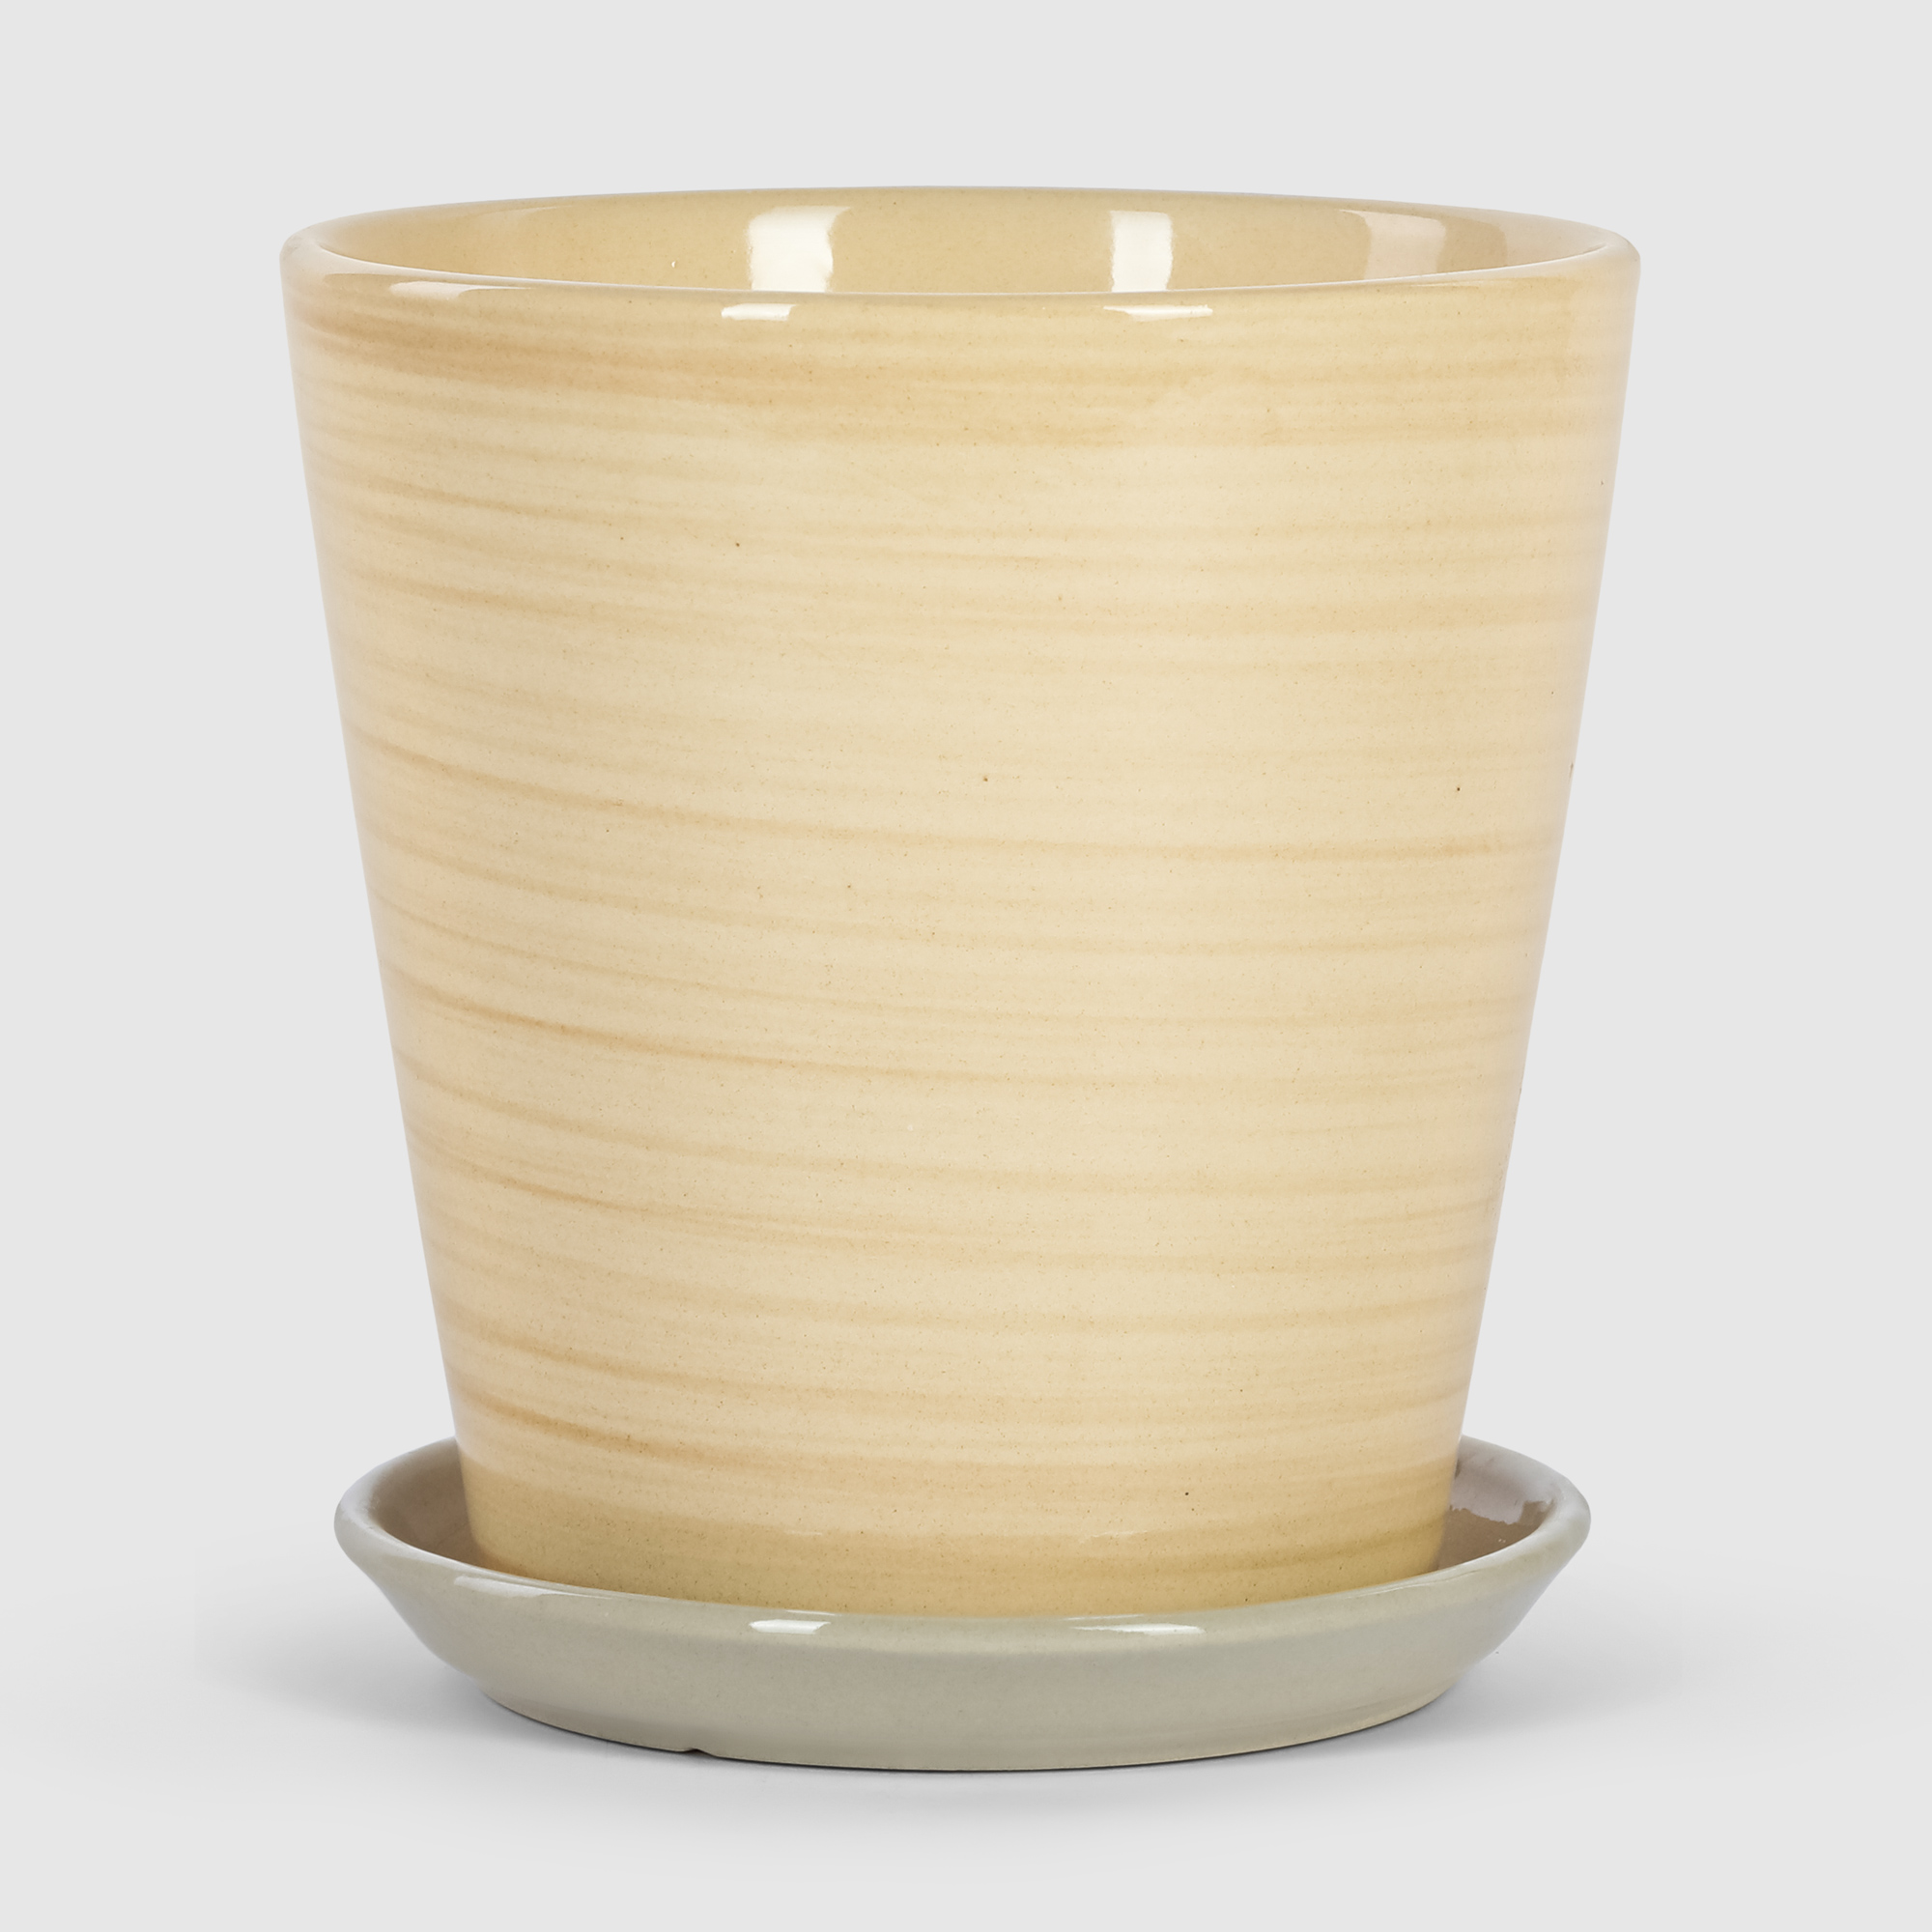 Кашпо керамическое для цветов Shine Pots 16x17см бежевое полосатое кашпо керамическое для ов shine pots 16x17см антрацит